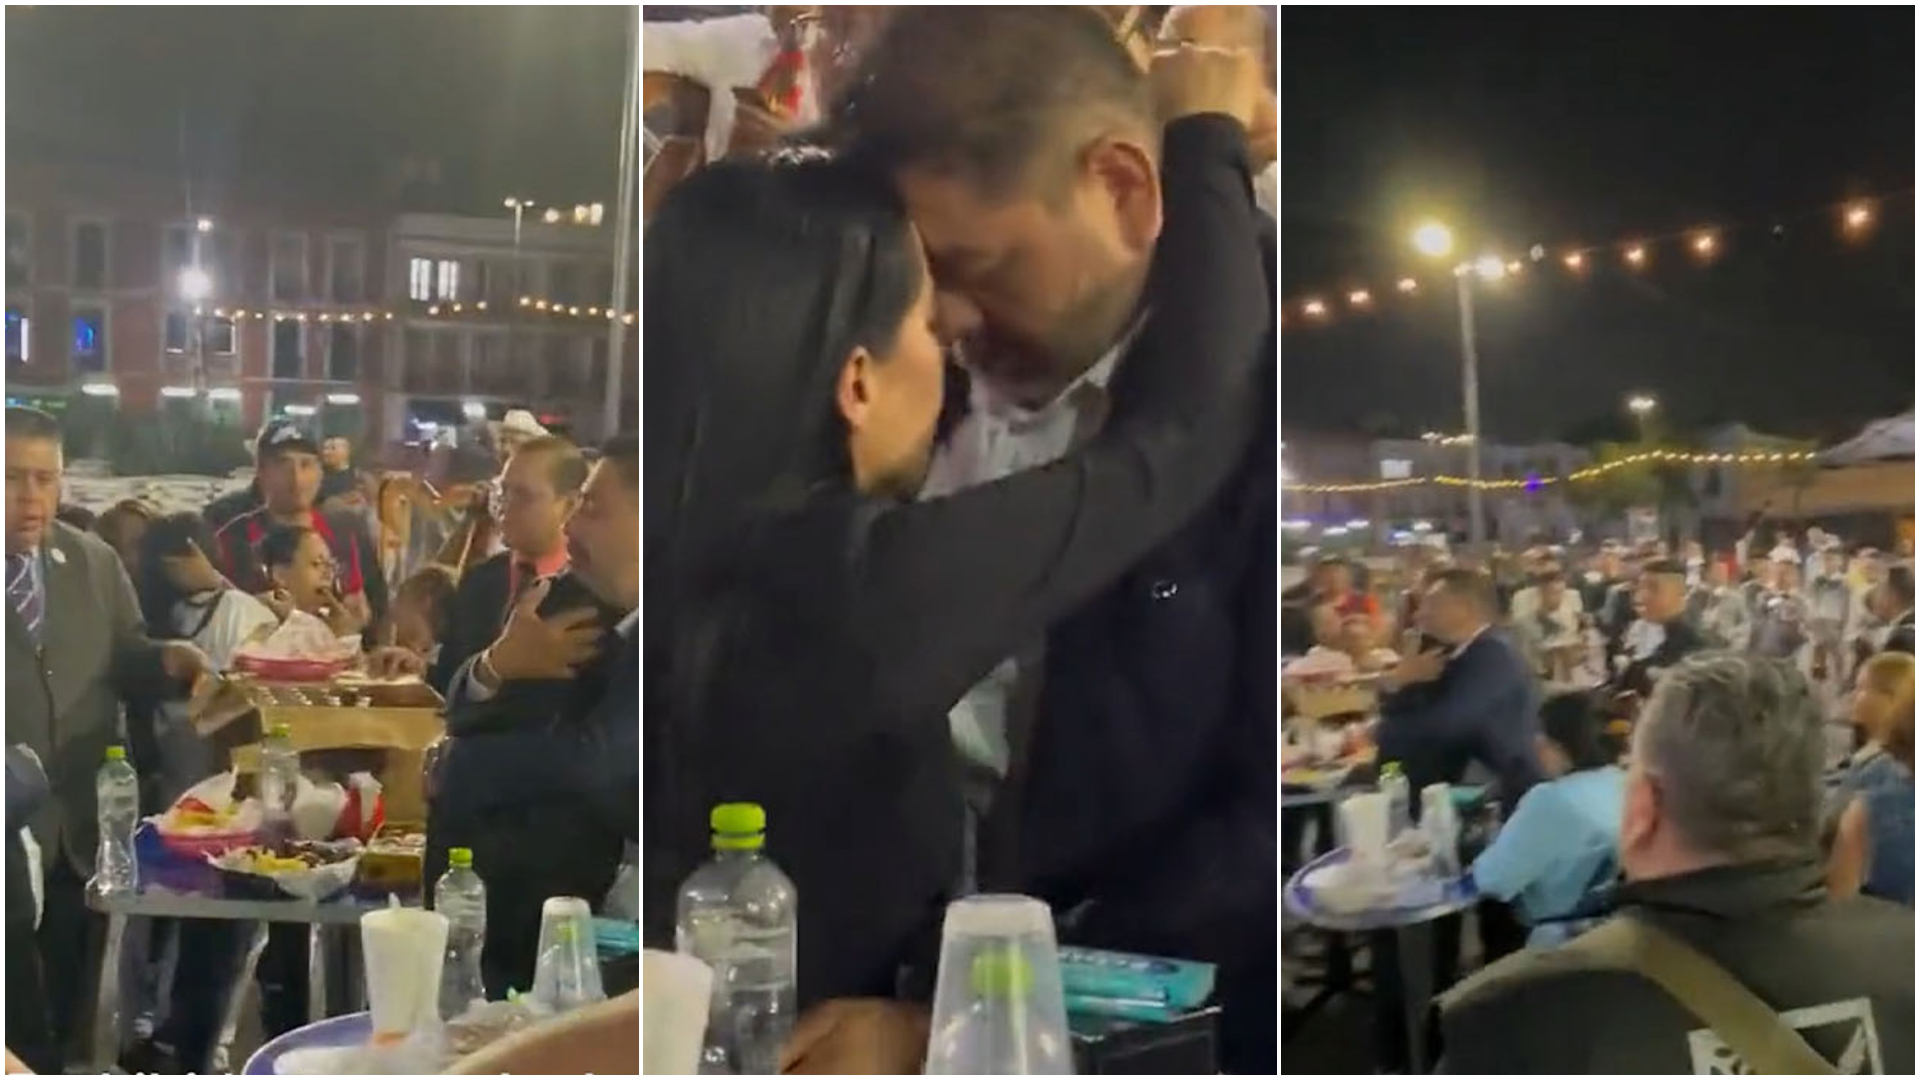 Sandra Cuevas explicó el video donde se le ve besándose con “el amor de su vida” en Garibaldi